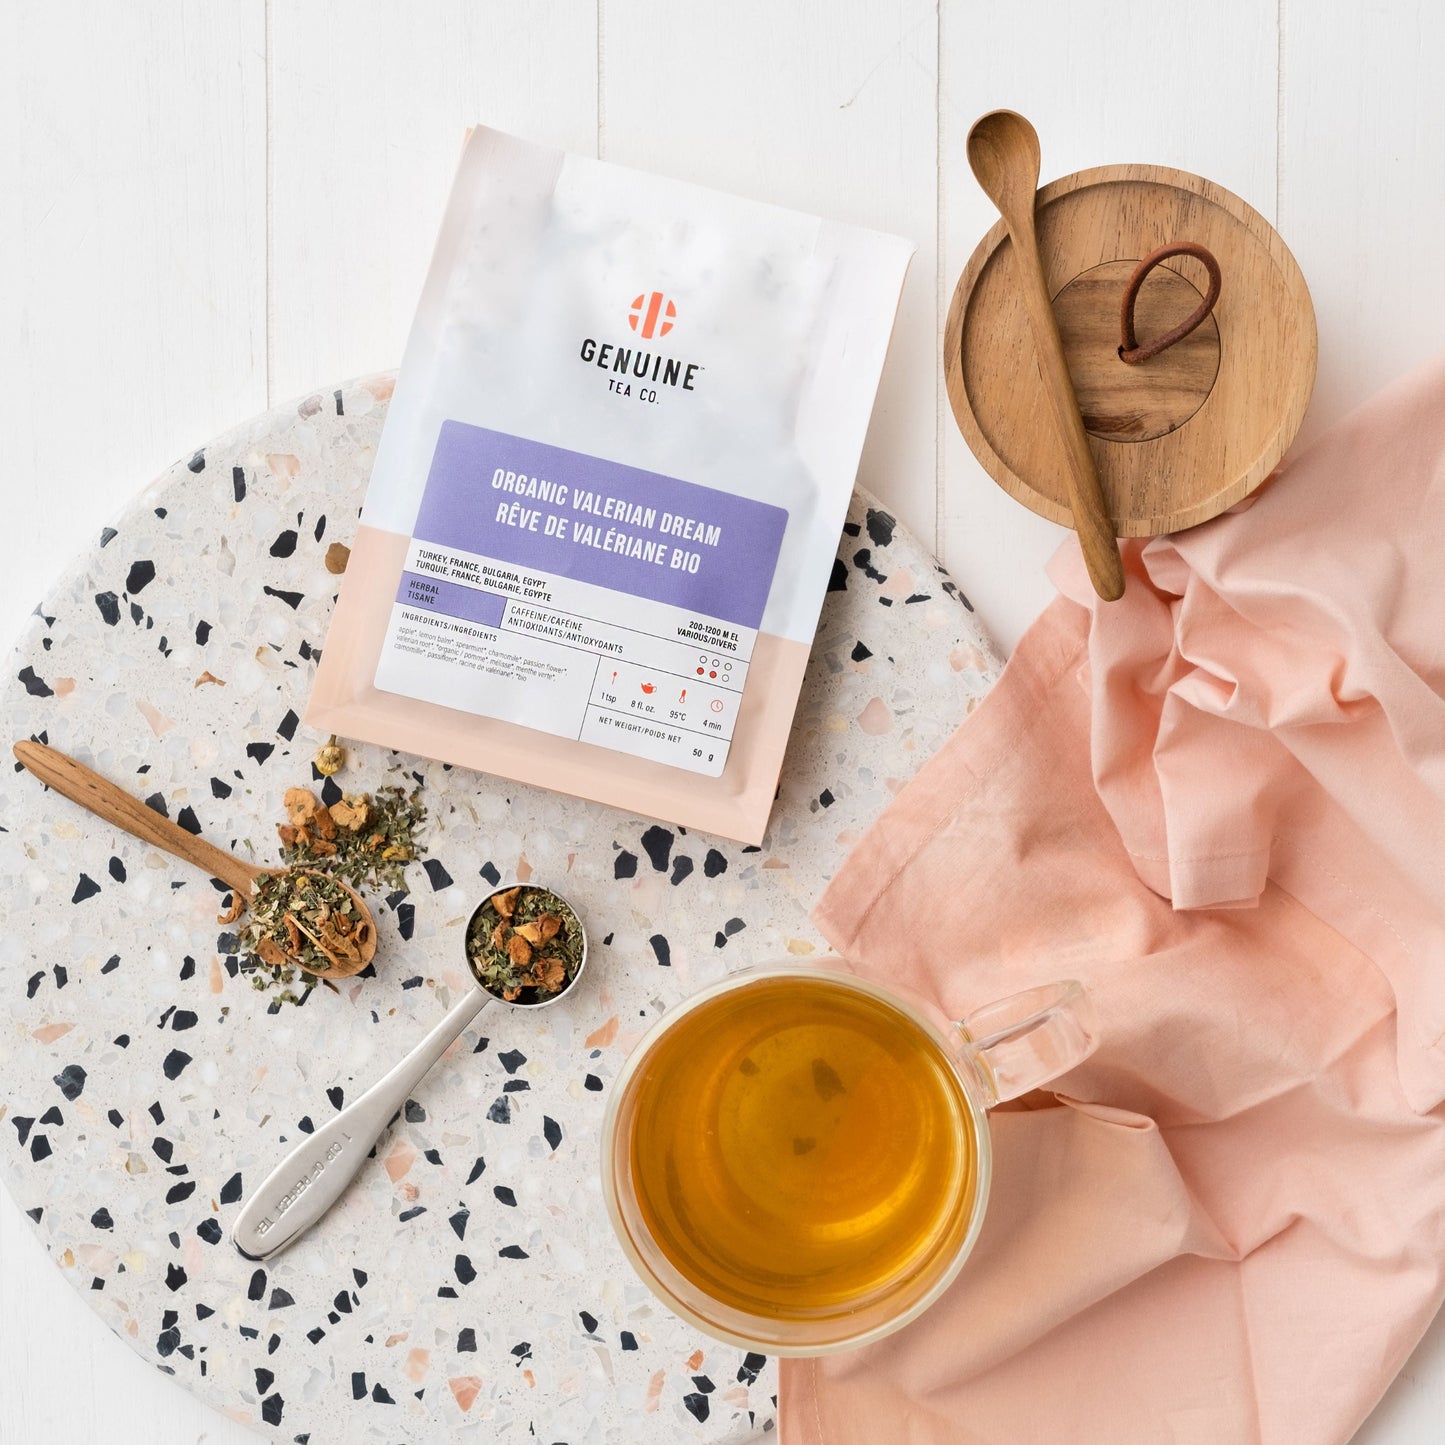 Organic Valerian Dream Sleep Tea - Herbal Tea